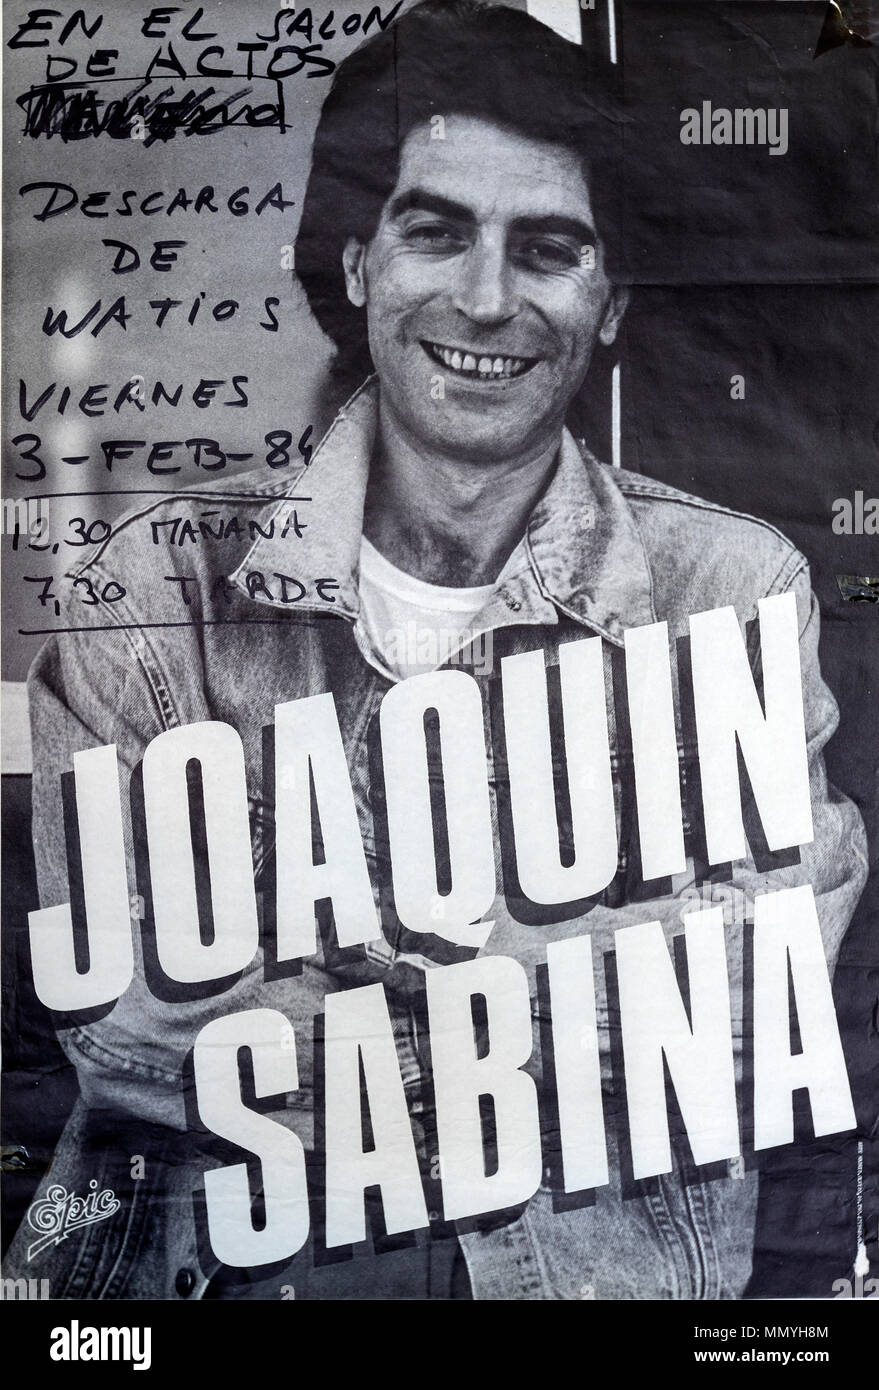 Concerto di Young Joaquin Sabina presso il Politecnico di Ingegneria Aeronautica dell'Università di Madrid 1984, manifesto di concerti musicali Foto Stock